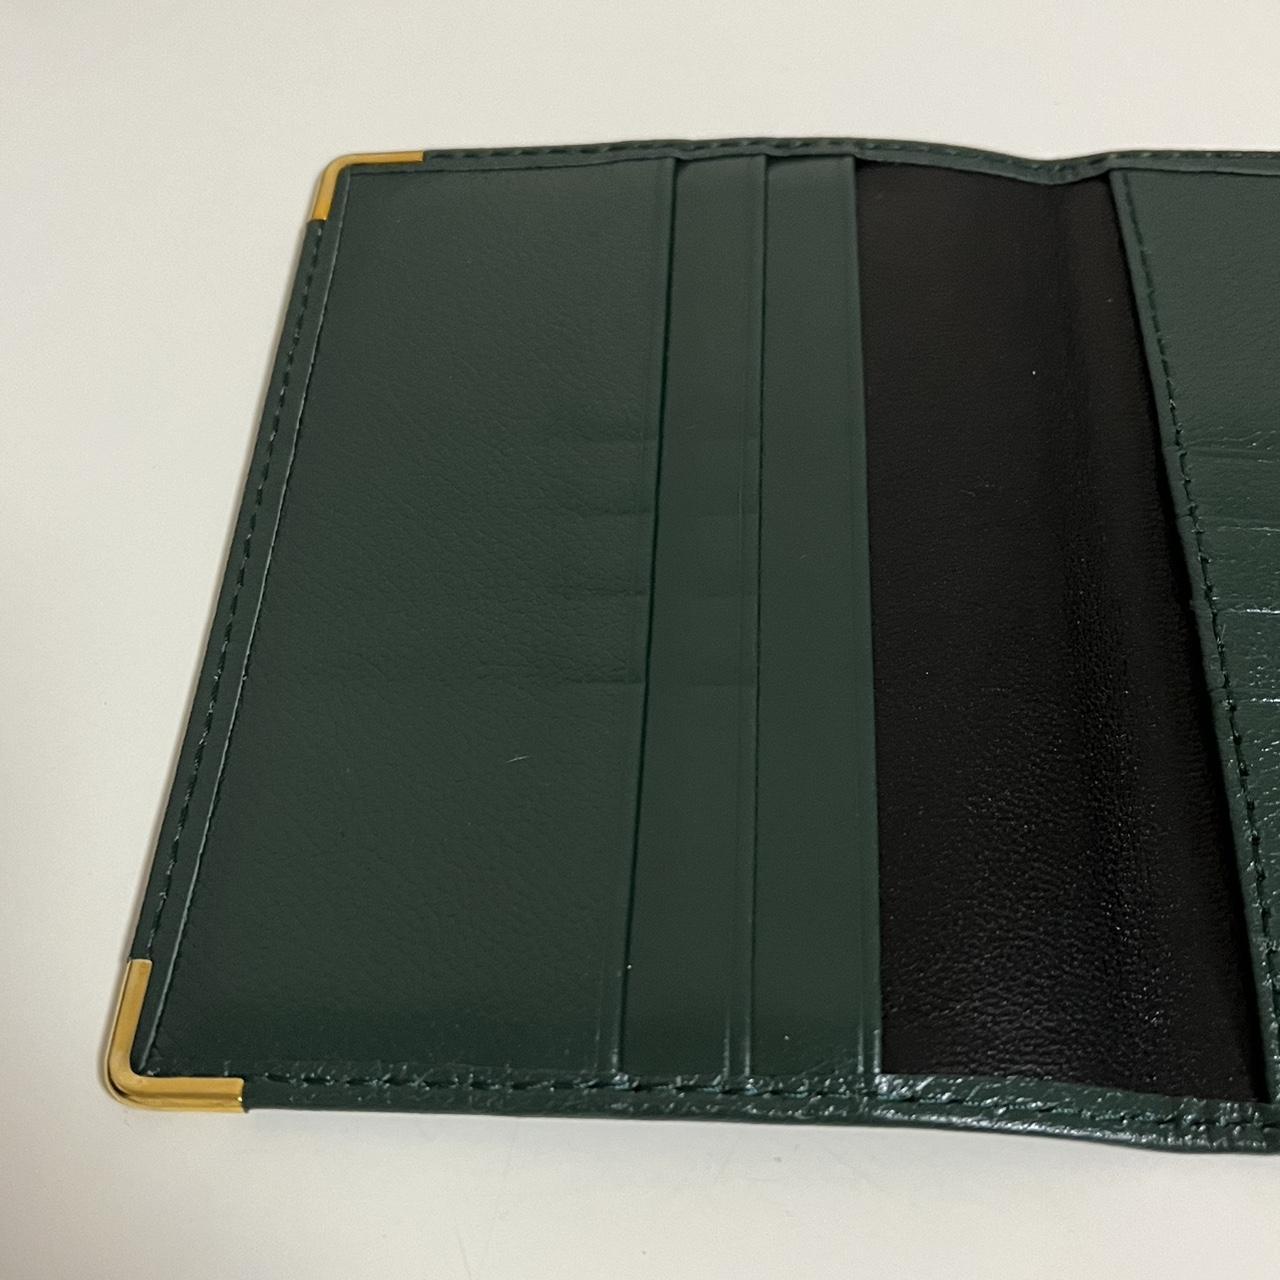 Product Image 4 - Rolex Passport Case Cardholder

Super rare